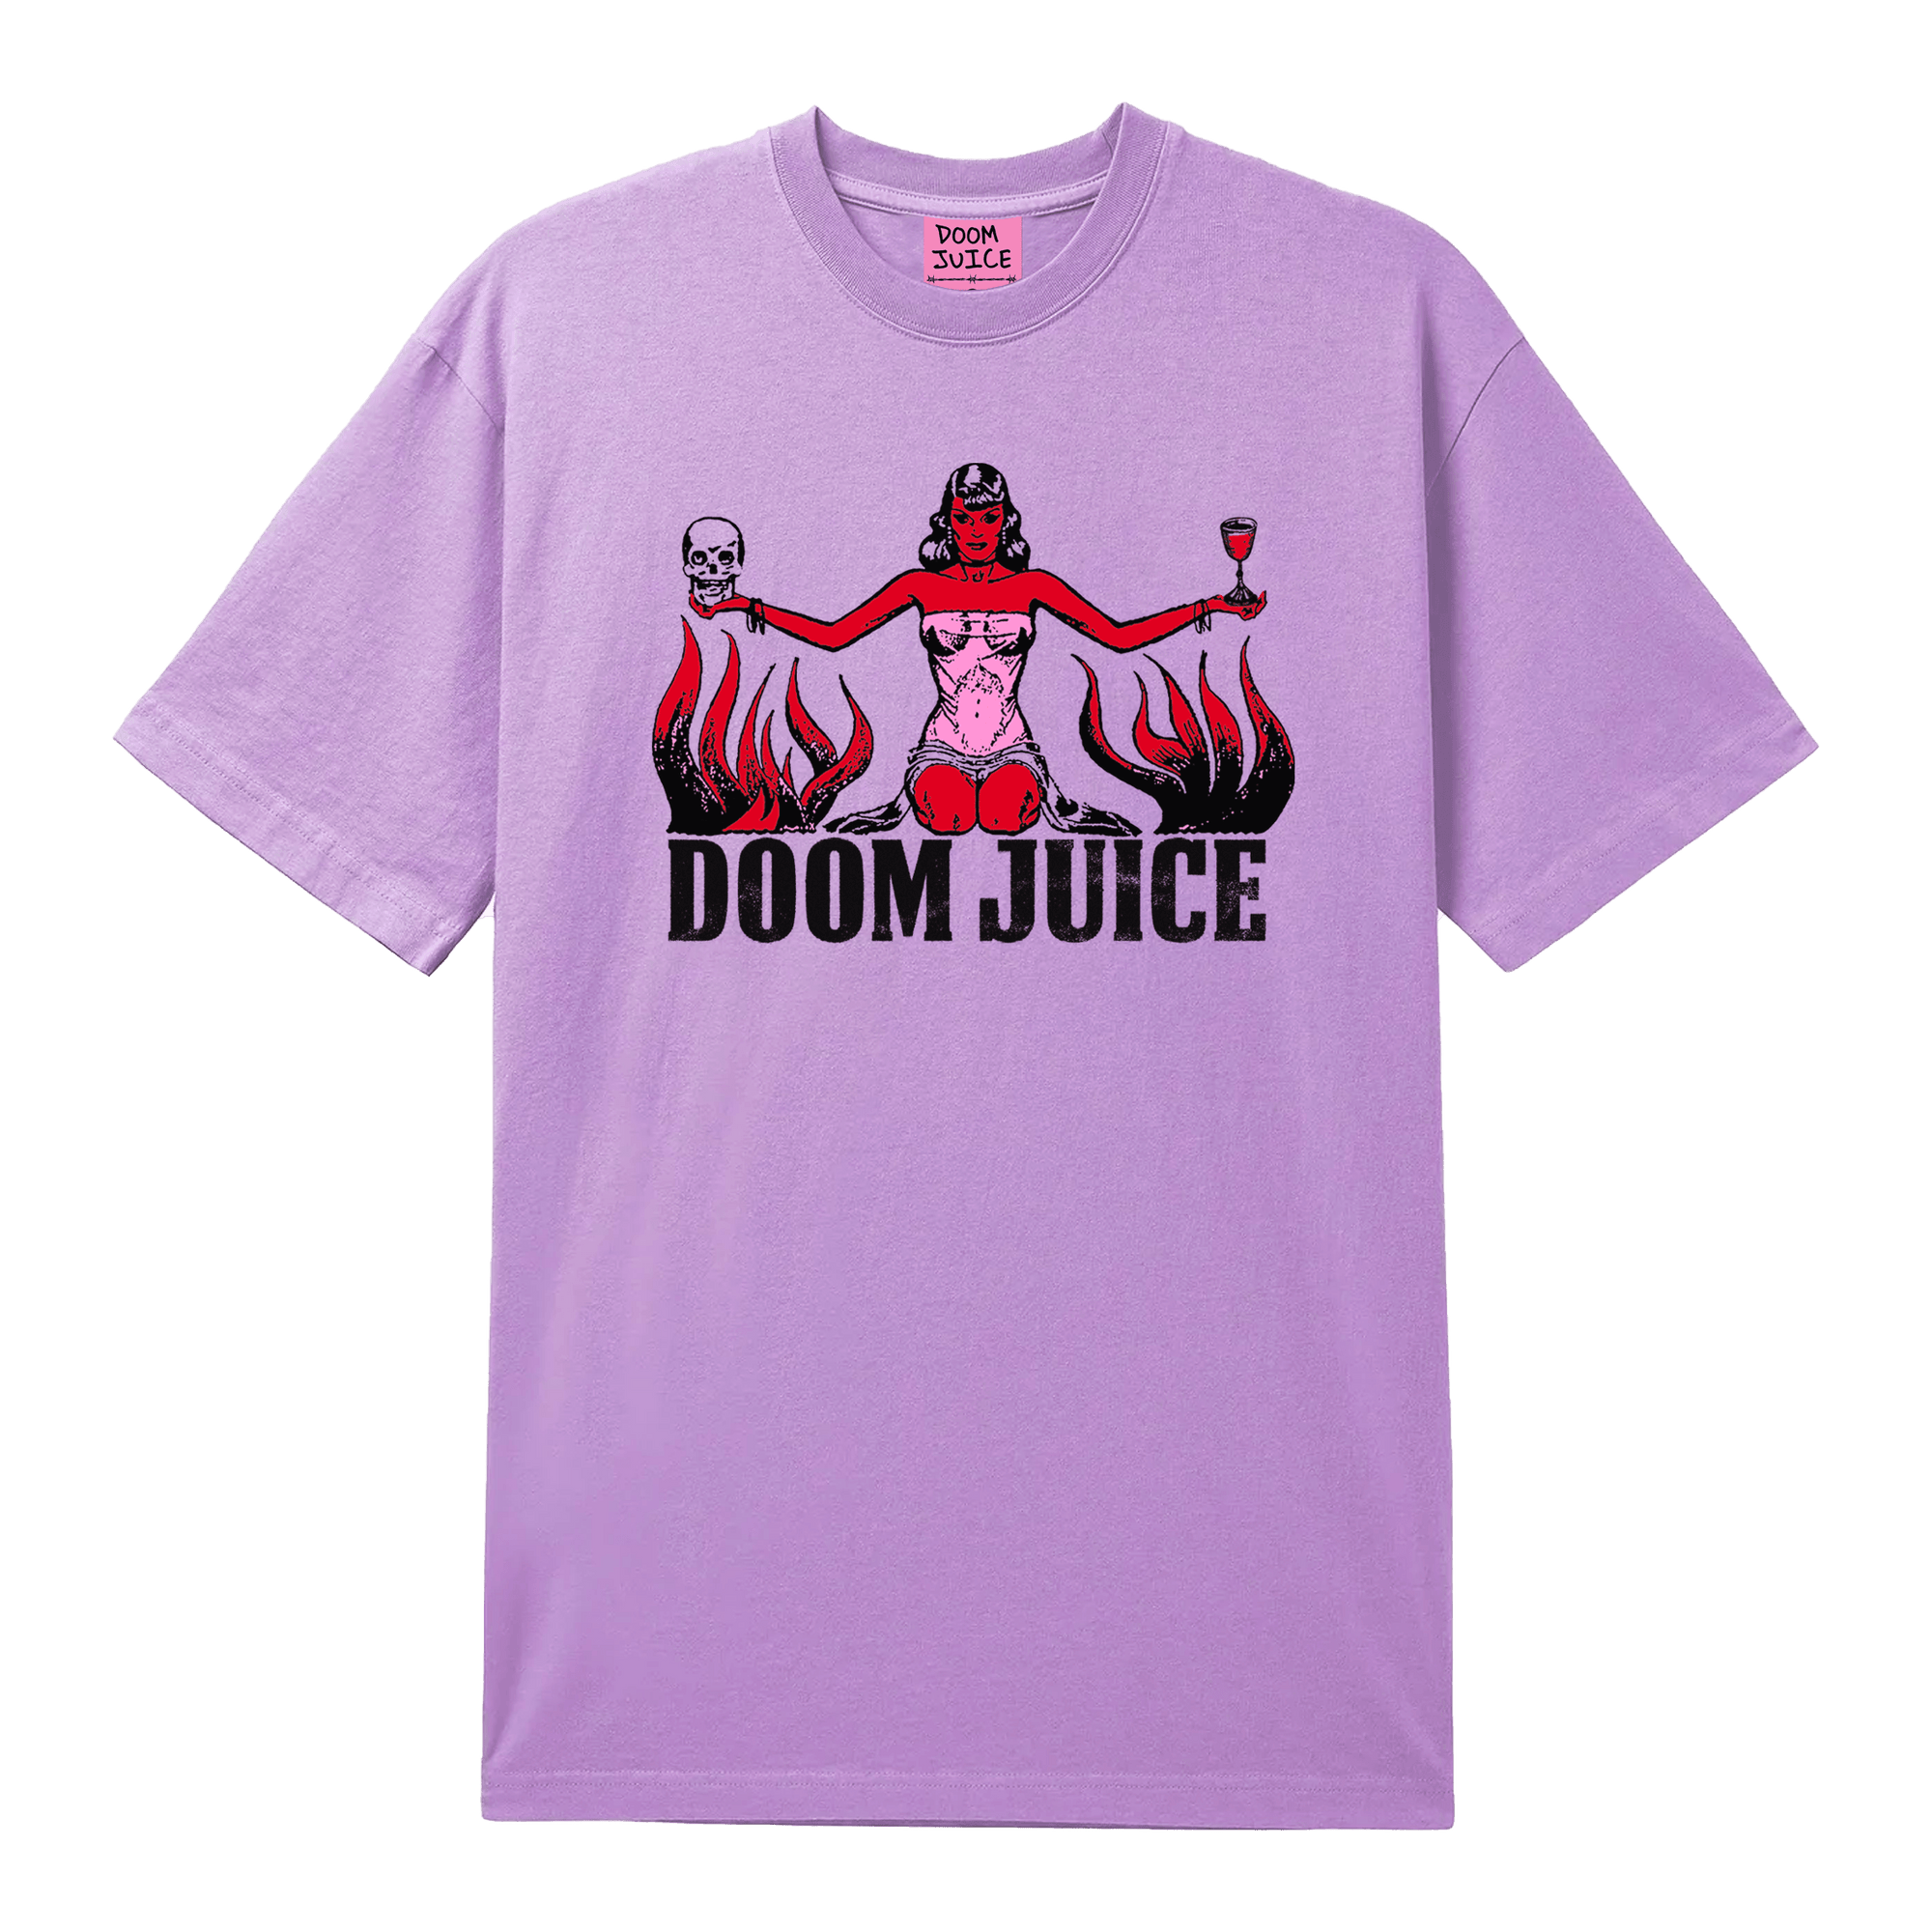 FIZZ + TEE BUNDLE - Doom Juice Worldwide